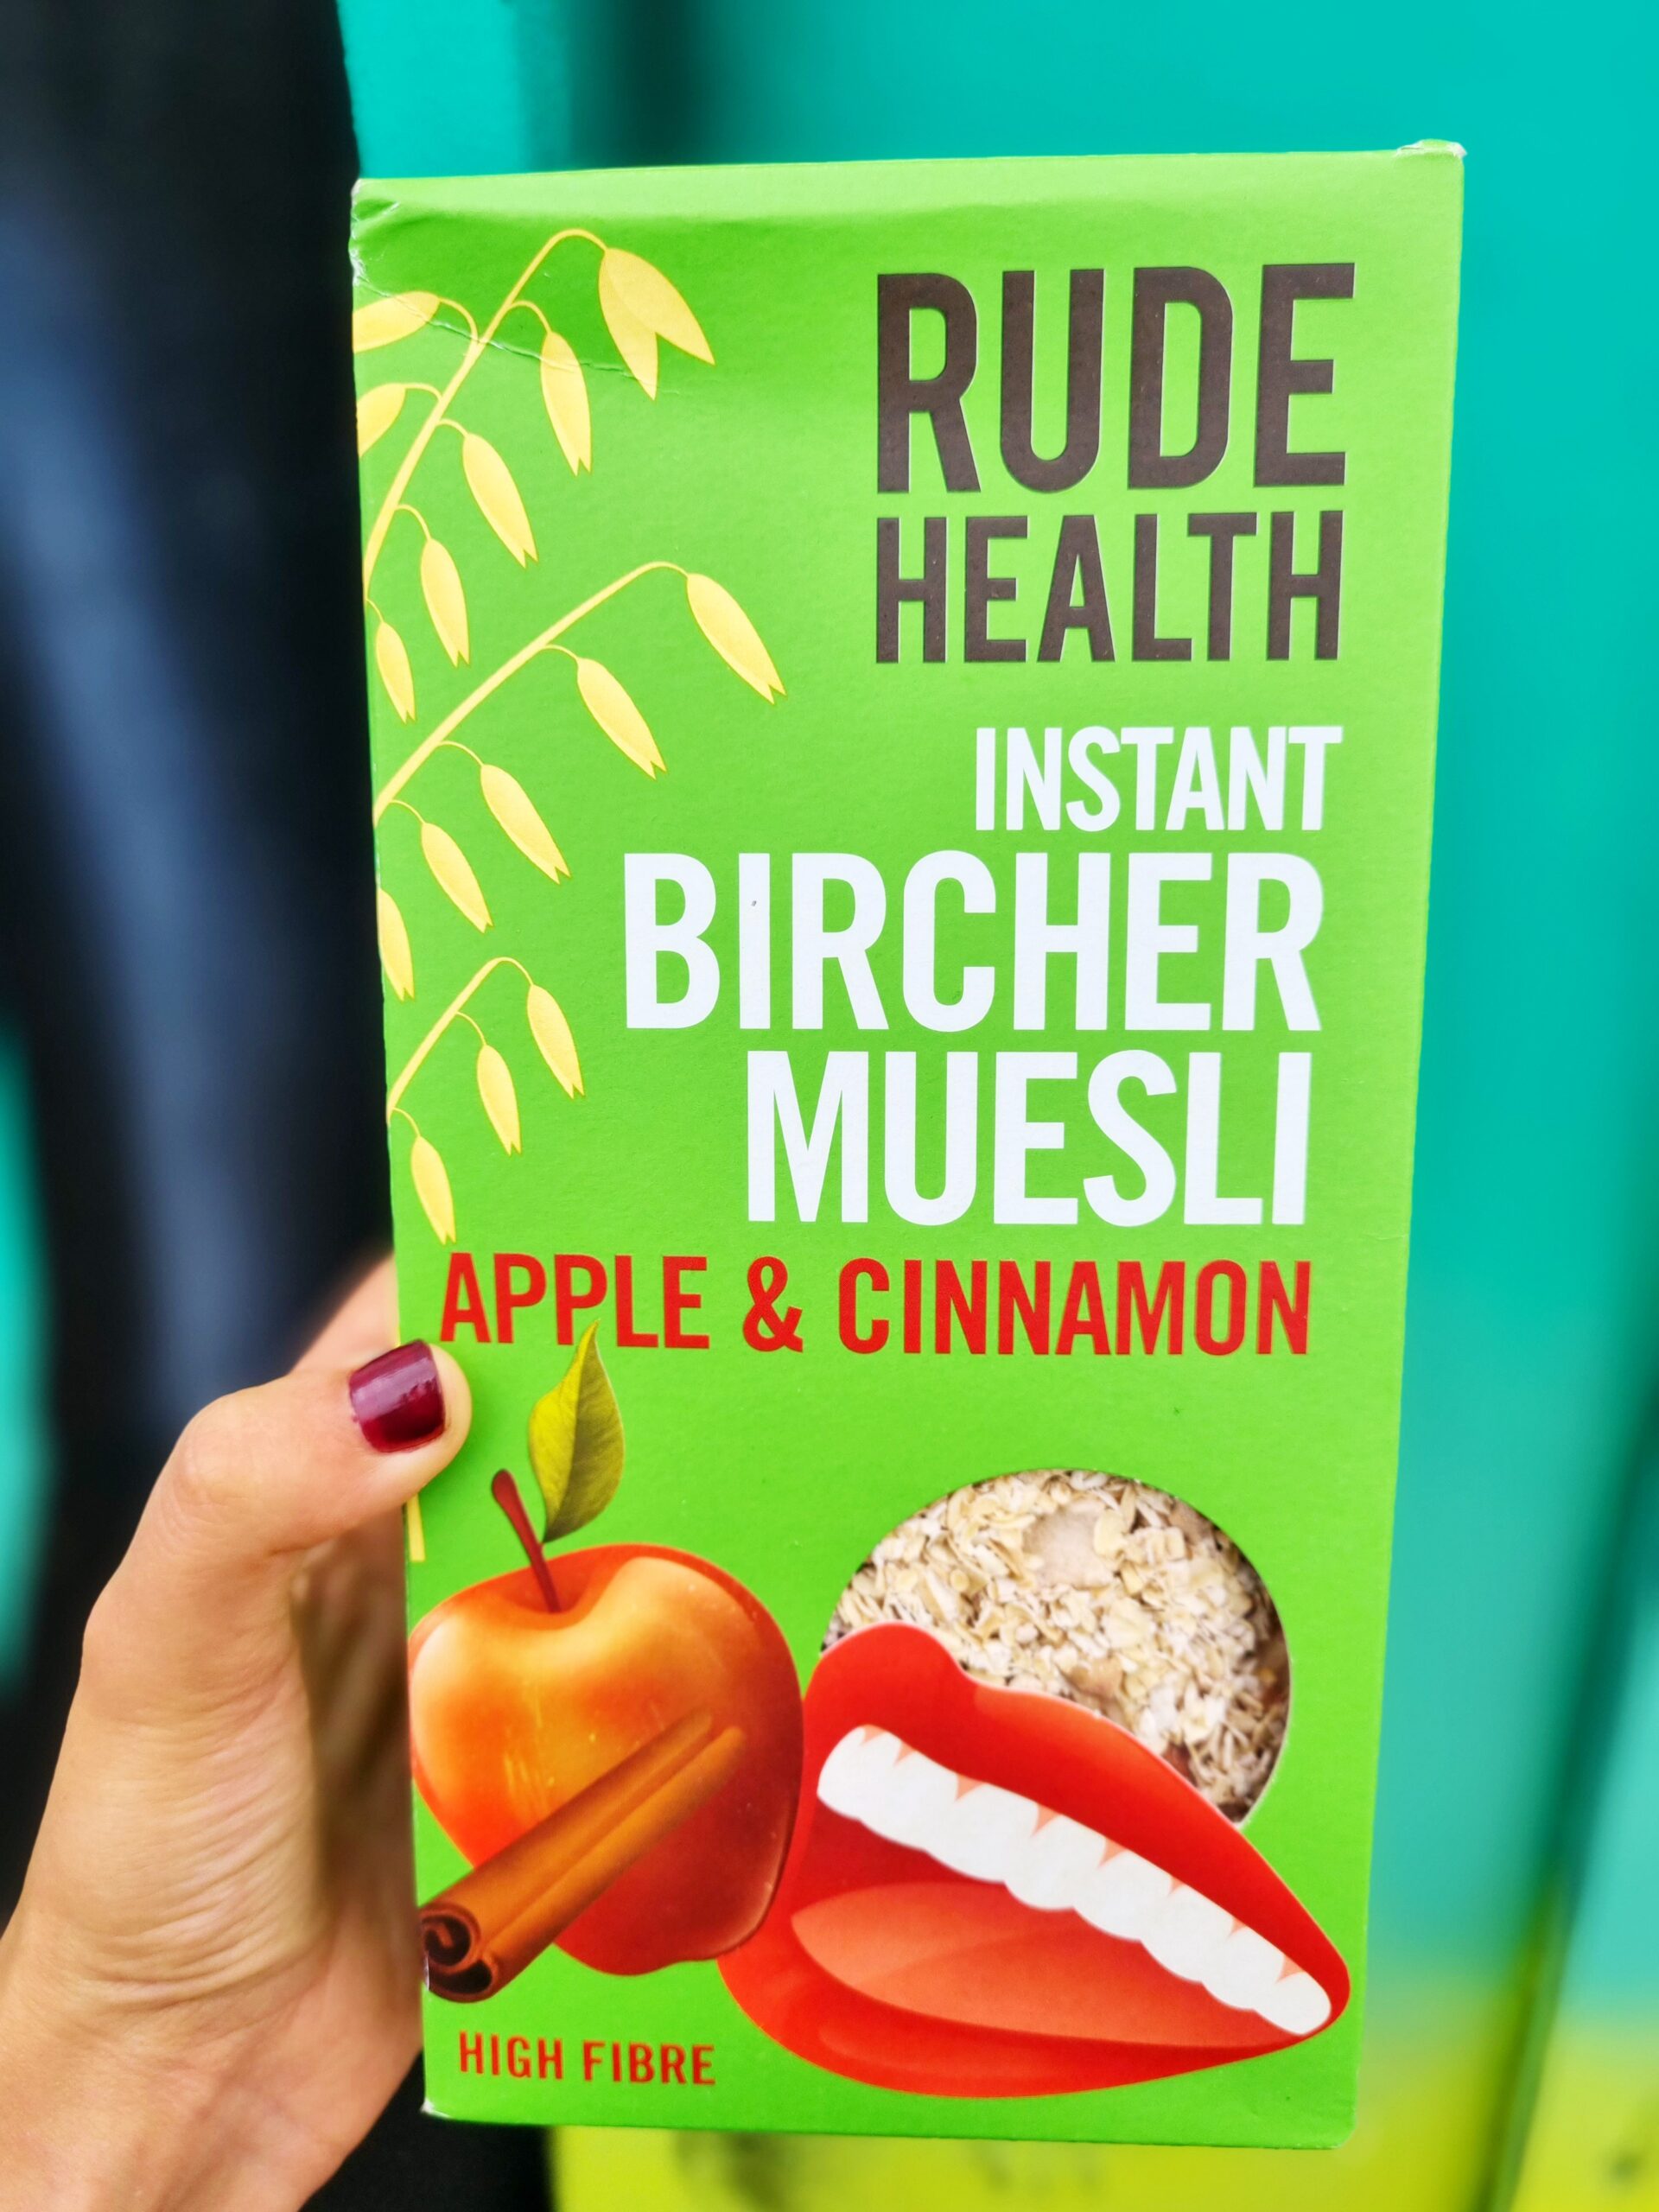 <img src="rude health.jpg" alt="rude health instant bircher muesli"/>